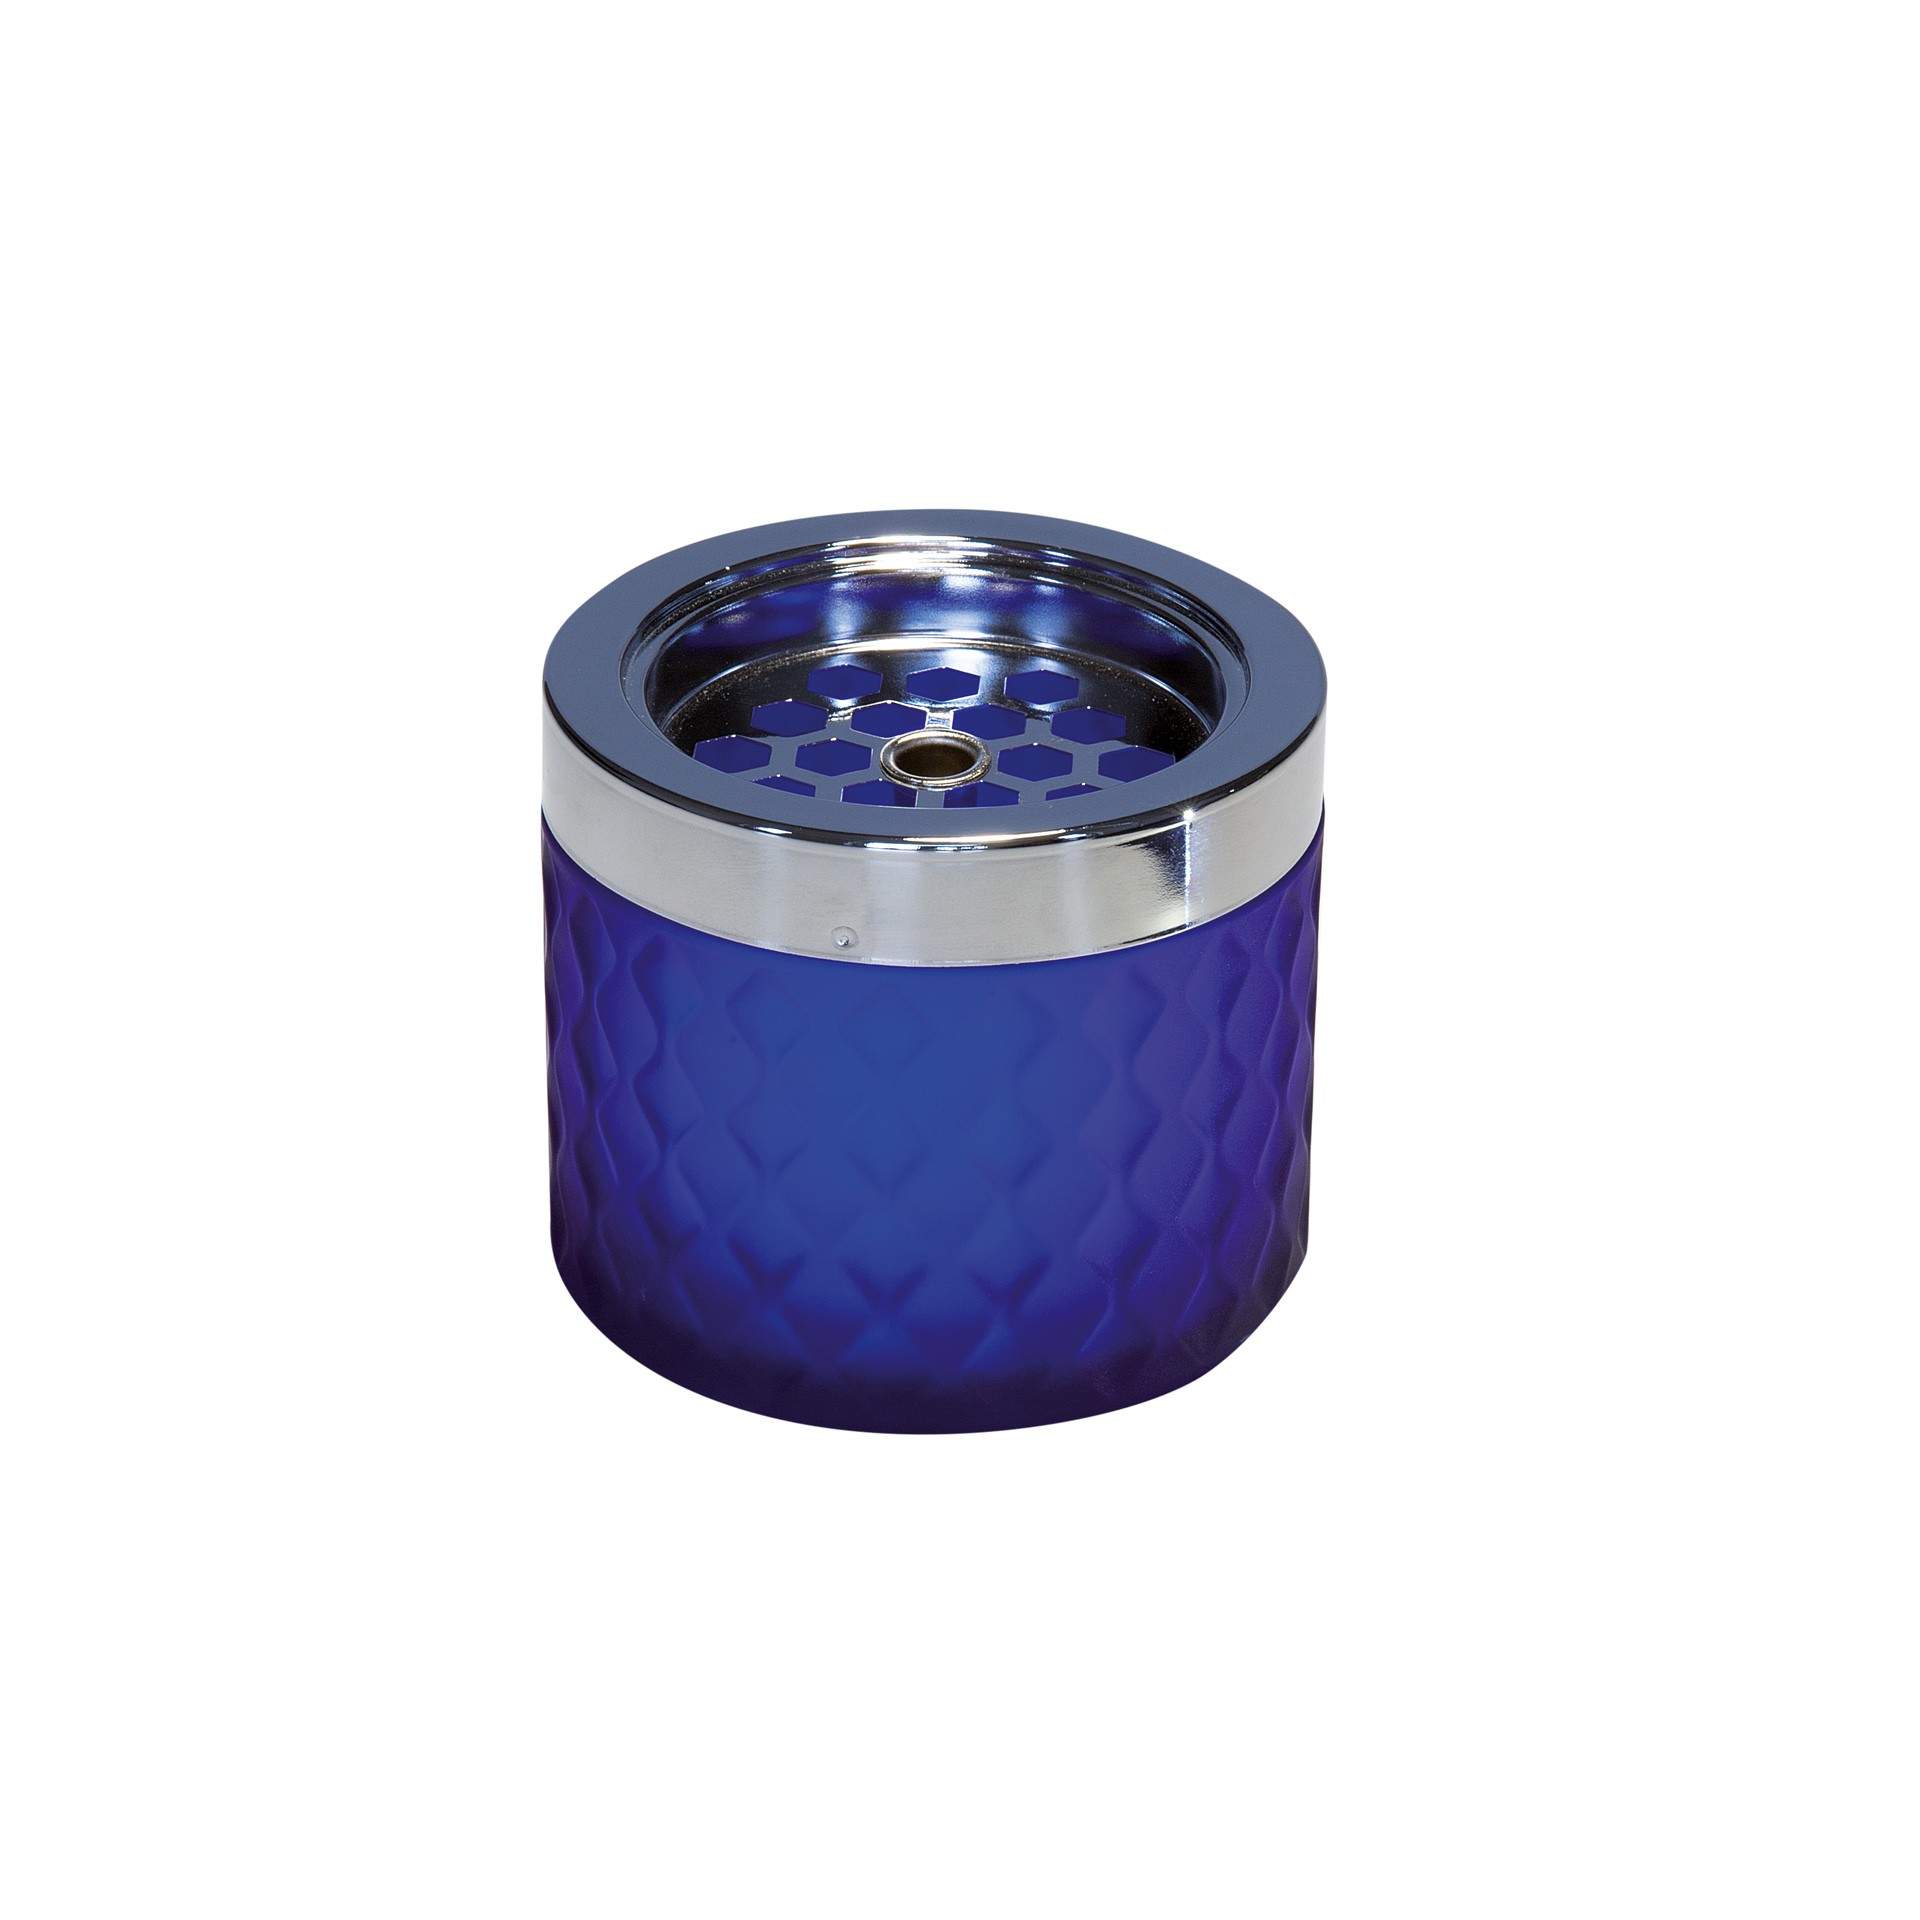 Wind-Aschenbecher - mattes, gefrostetes Glas - blau - Abm. 8,0 cm - Ø 9,5 cm - Glas - 563-B